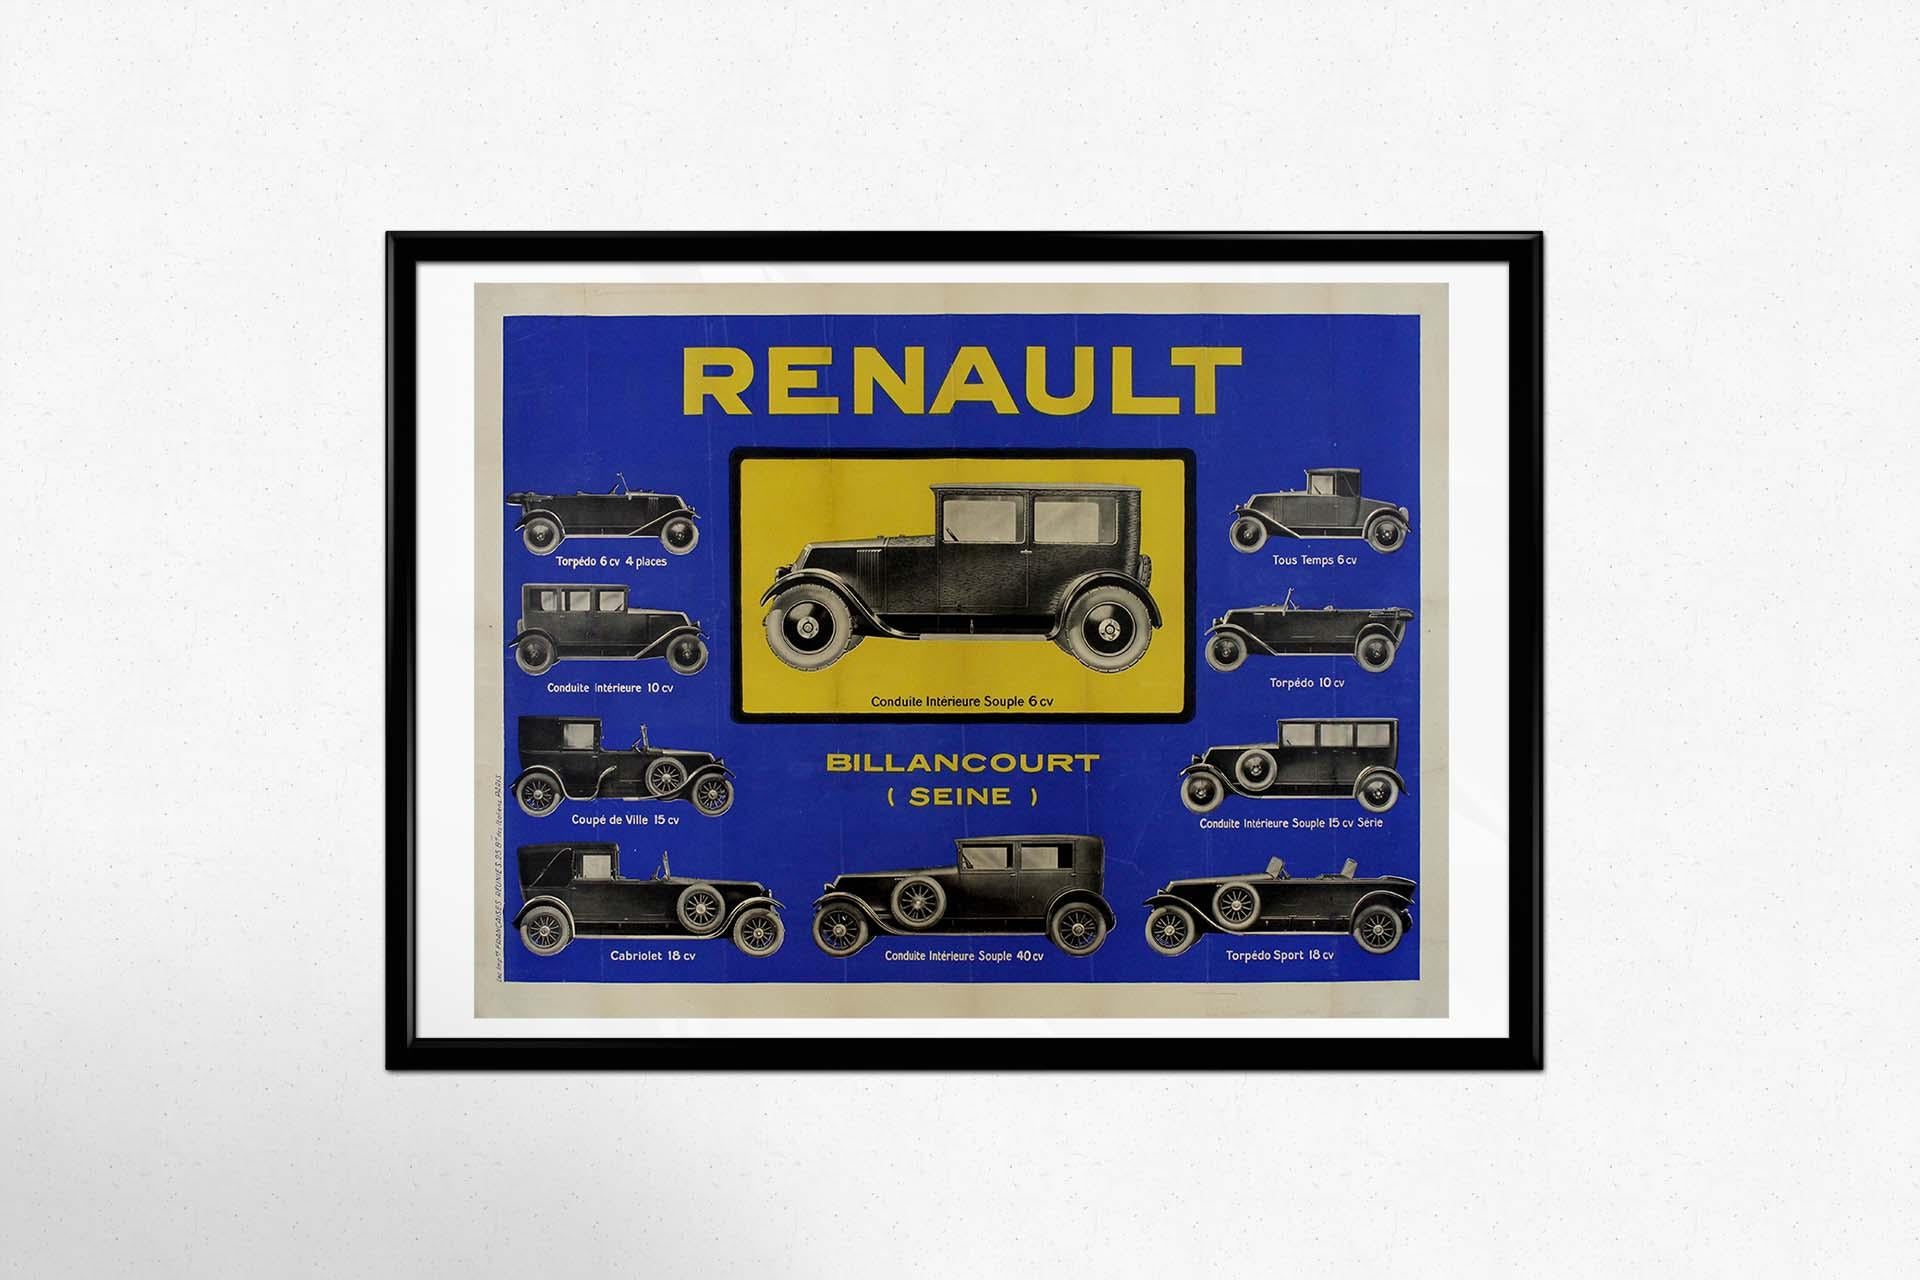 Treten Sie ein in die bezaubernde Welt der Vintage-Plakatkunst, wo uns das Originalplakat des Renault Conduite Intérieure Souple 6CV von ca. 1930 auf eine Zeitreise in eine Ära automobiler Raffinesse und zeitloser Eleganz mitnimmt. Dieses Plakat